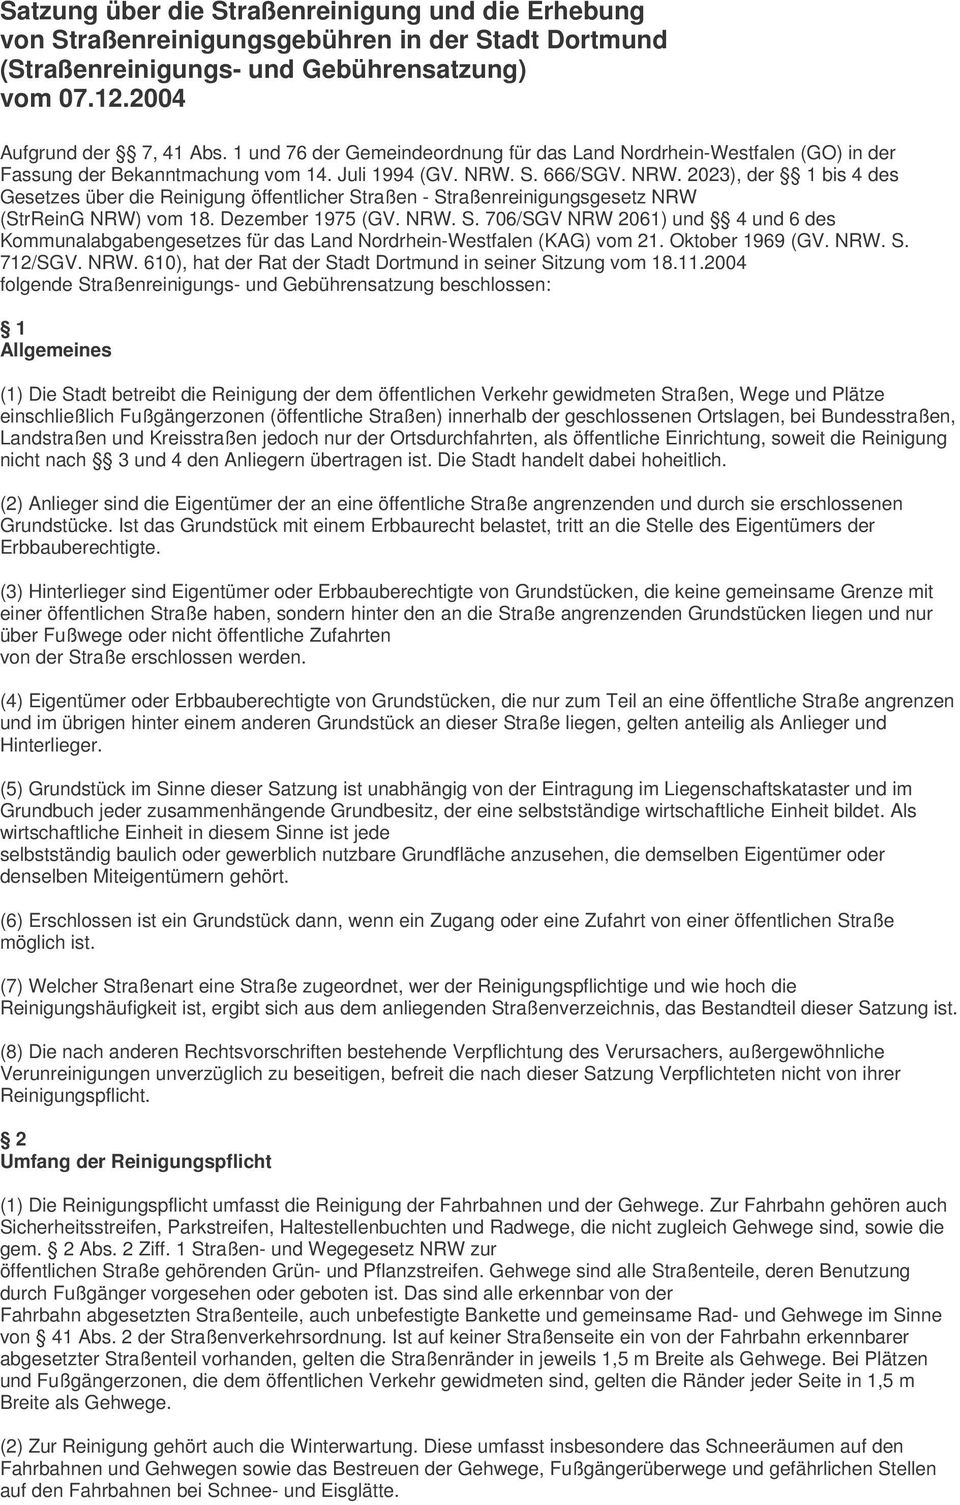 S. 666/SGV. NRW. 2023), der 1 bis 4 des Gesetzes über die Reinigung öffentlicher Straßen - Straßenreinigungsgesetz NRW (StrReinG NRW) vom 18. Dezember 1975 (GV. NRW. S. 706/SGV NRW 2061) und 4 und 6 des Kommunalabgabengesetzes für das Land Nordrhein-Westfalen (KAG) vom 21.